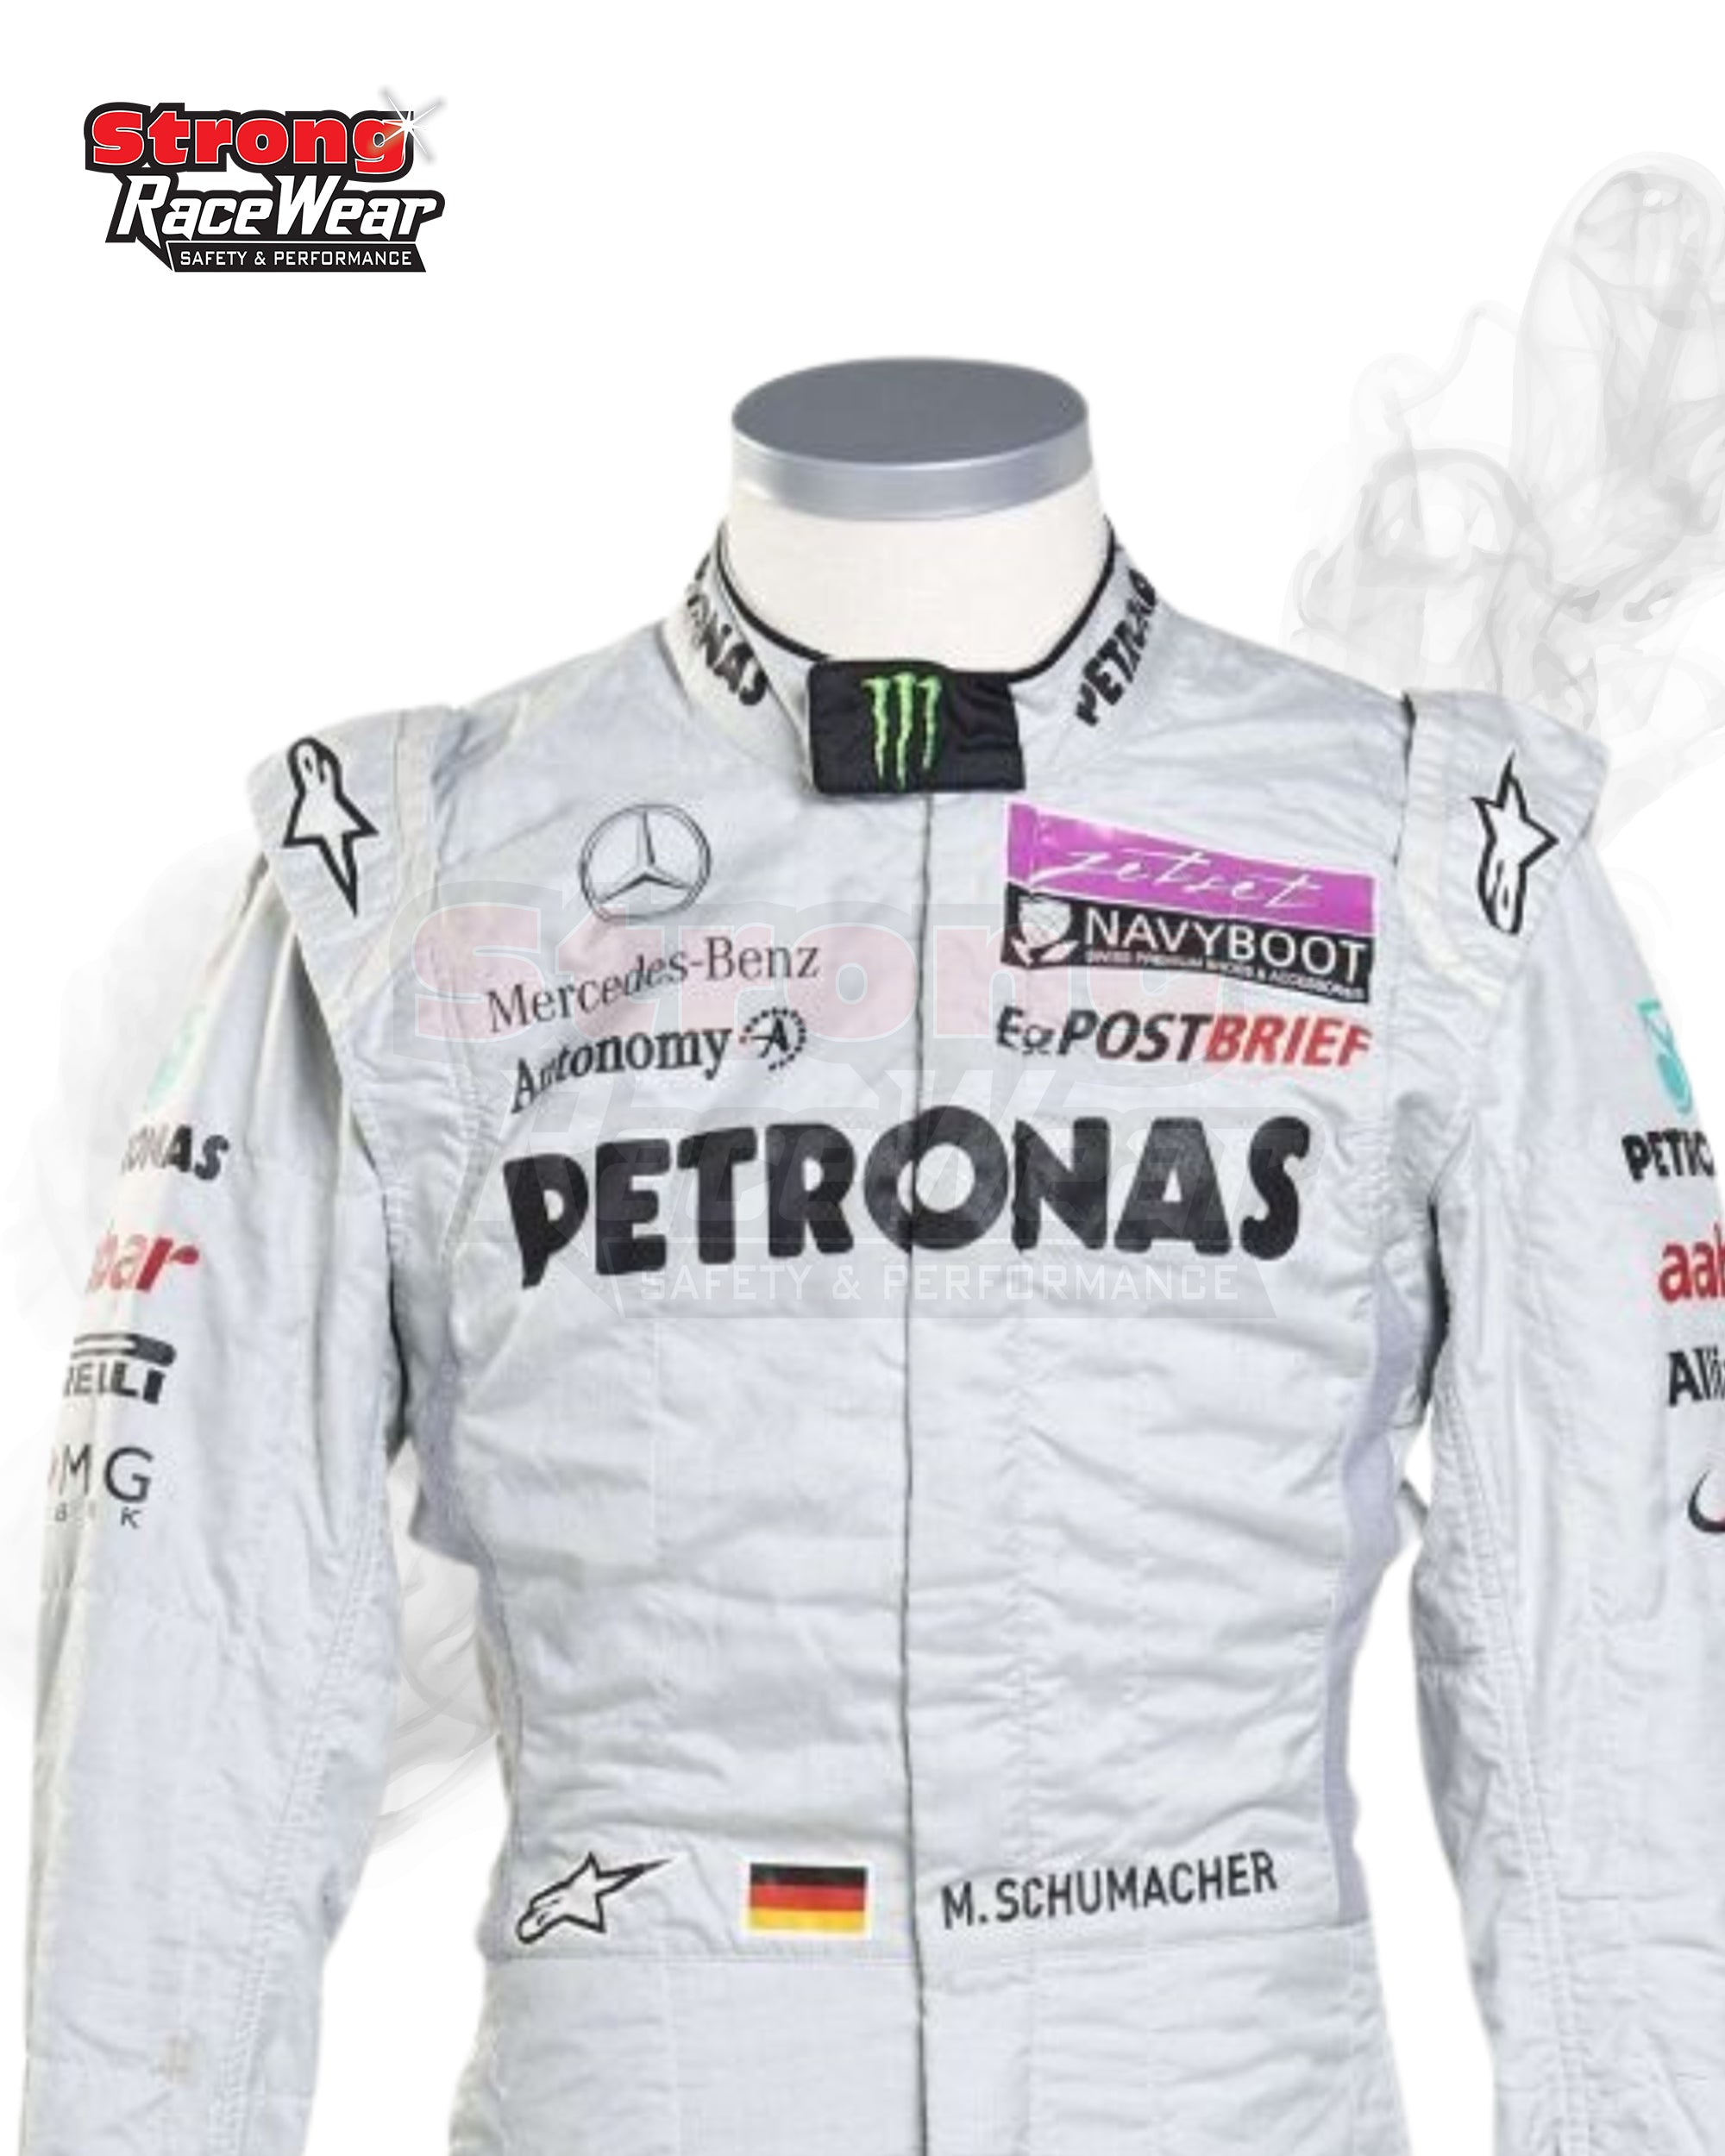 2011 Michael Schumacher Mercedes F1 Racing Suit